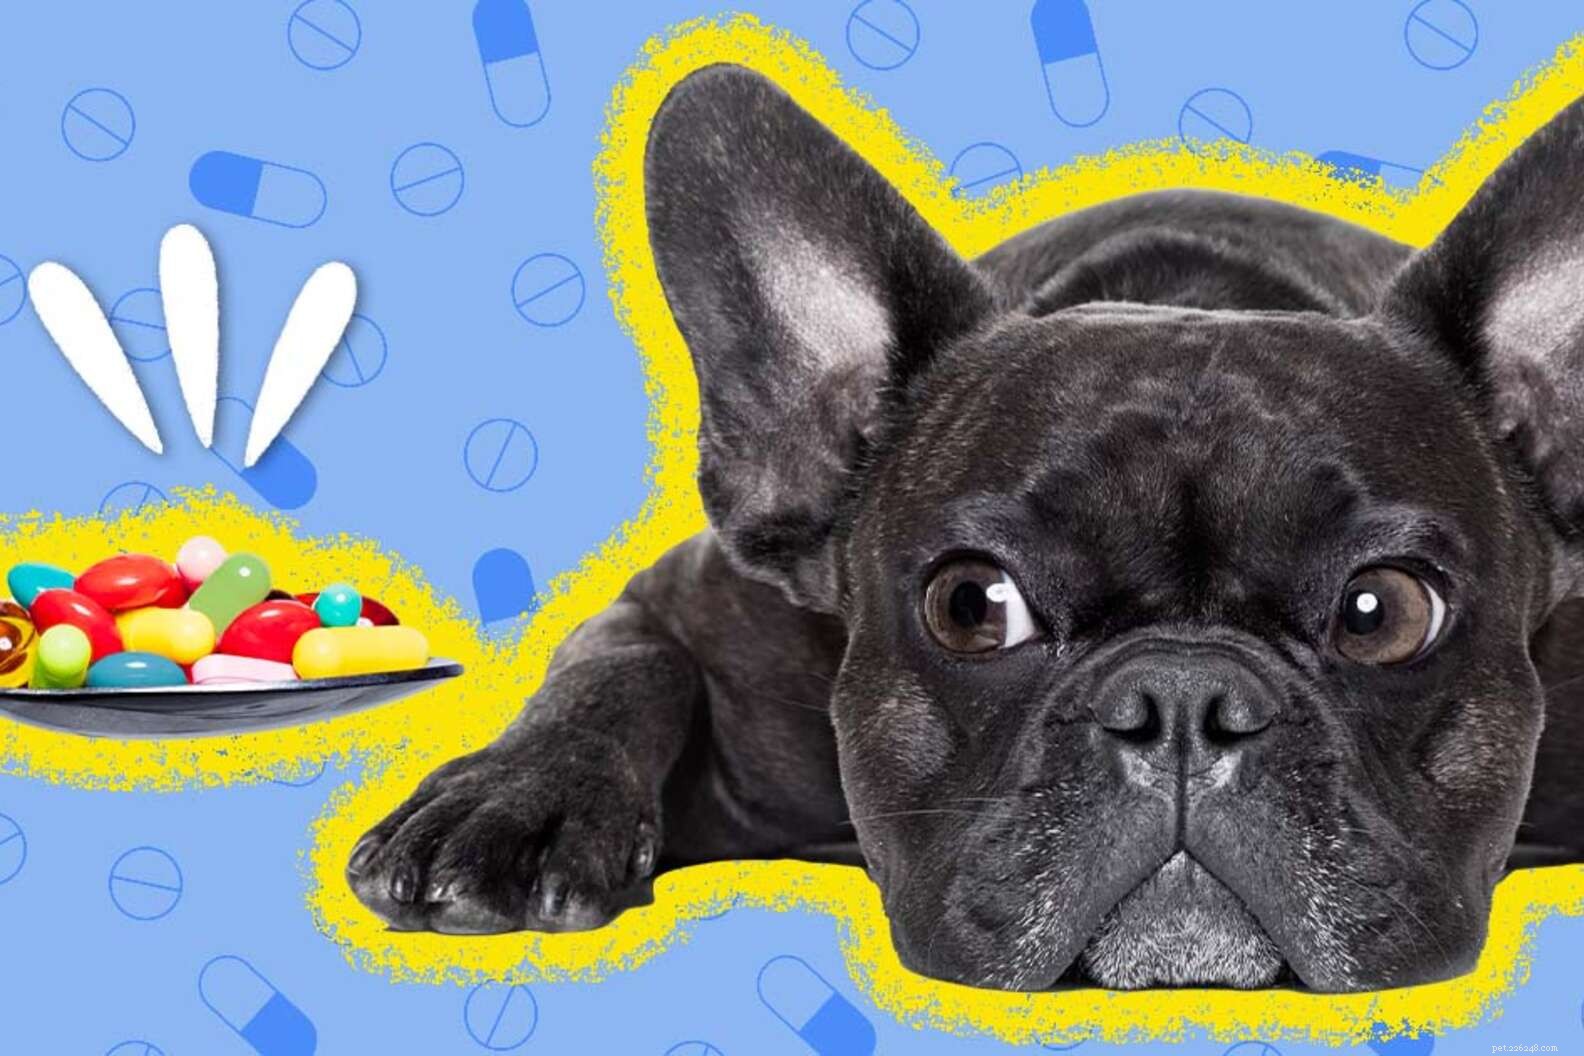 Werken angstmedicatie voor honden?